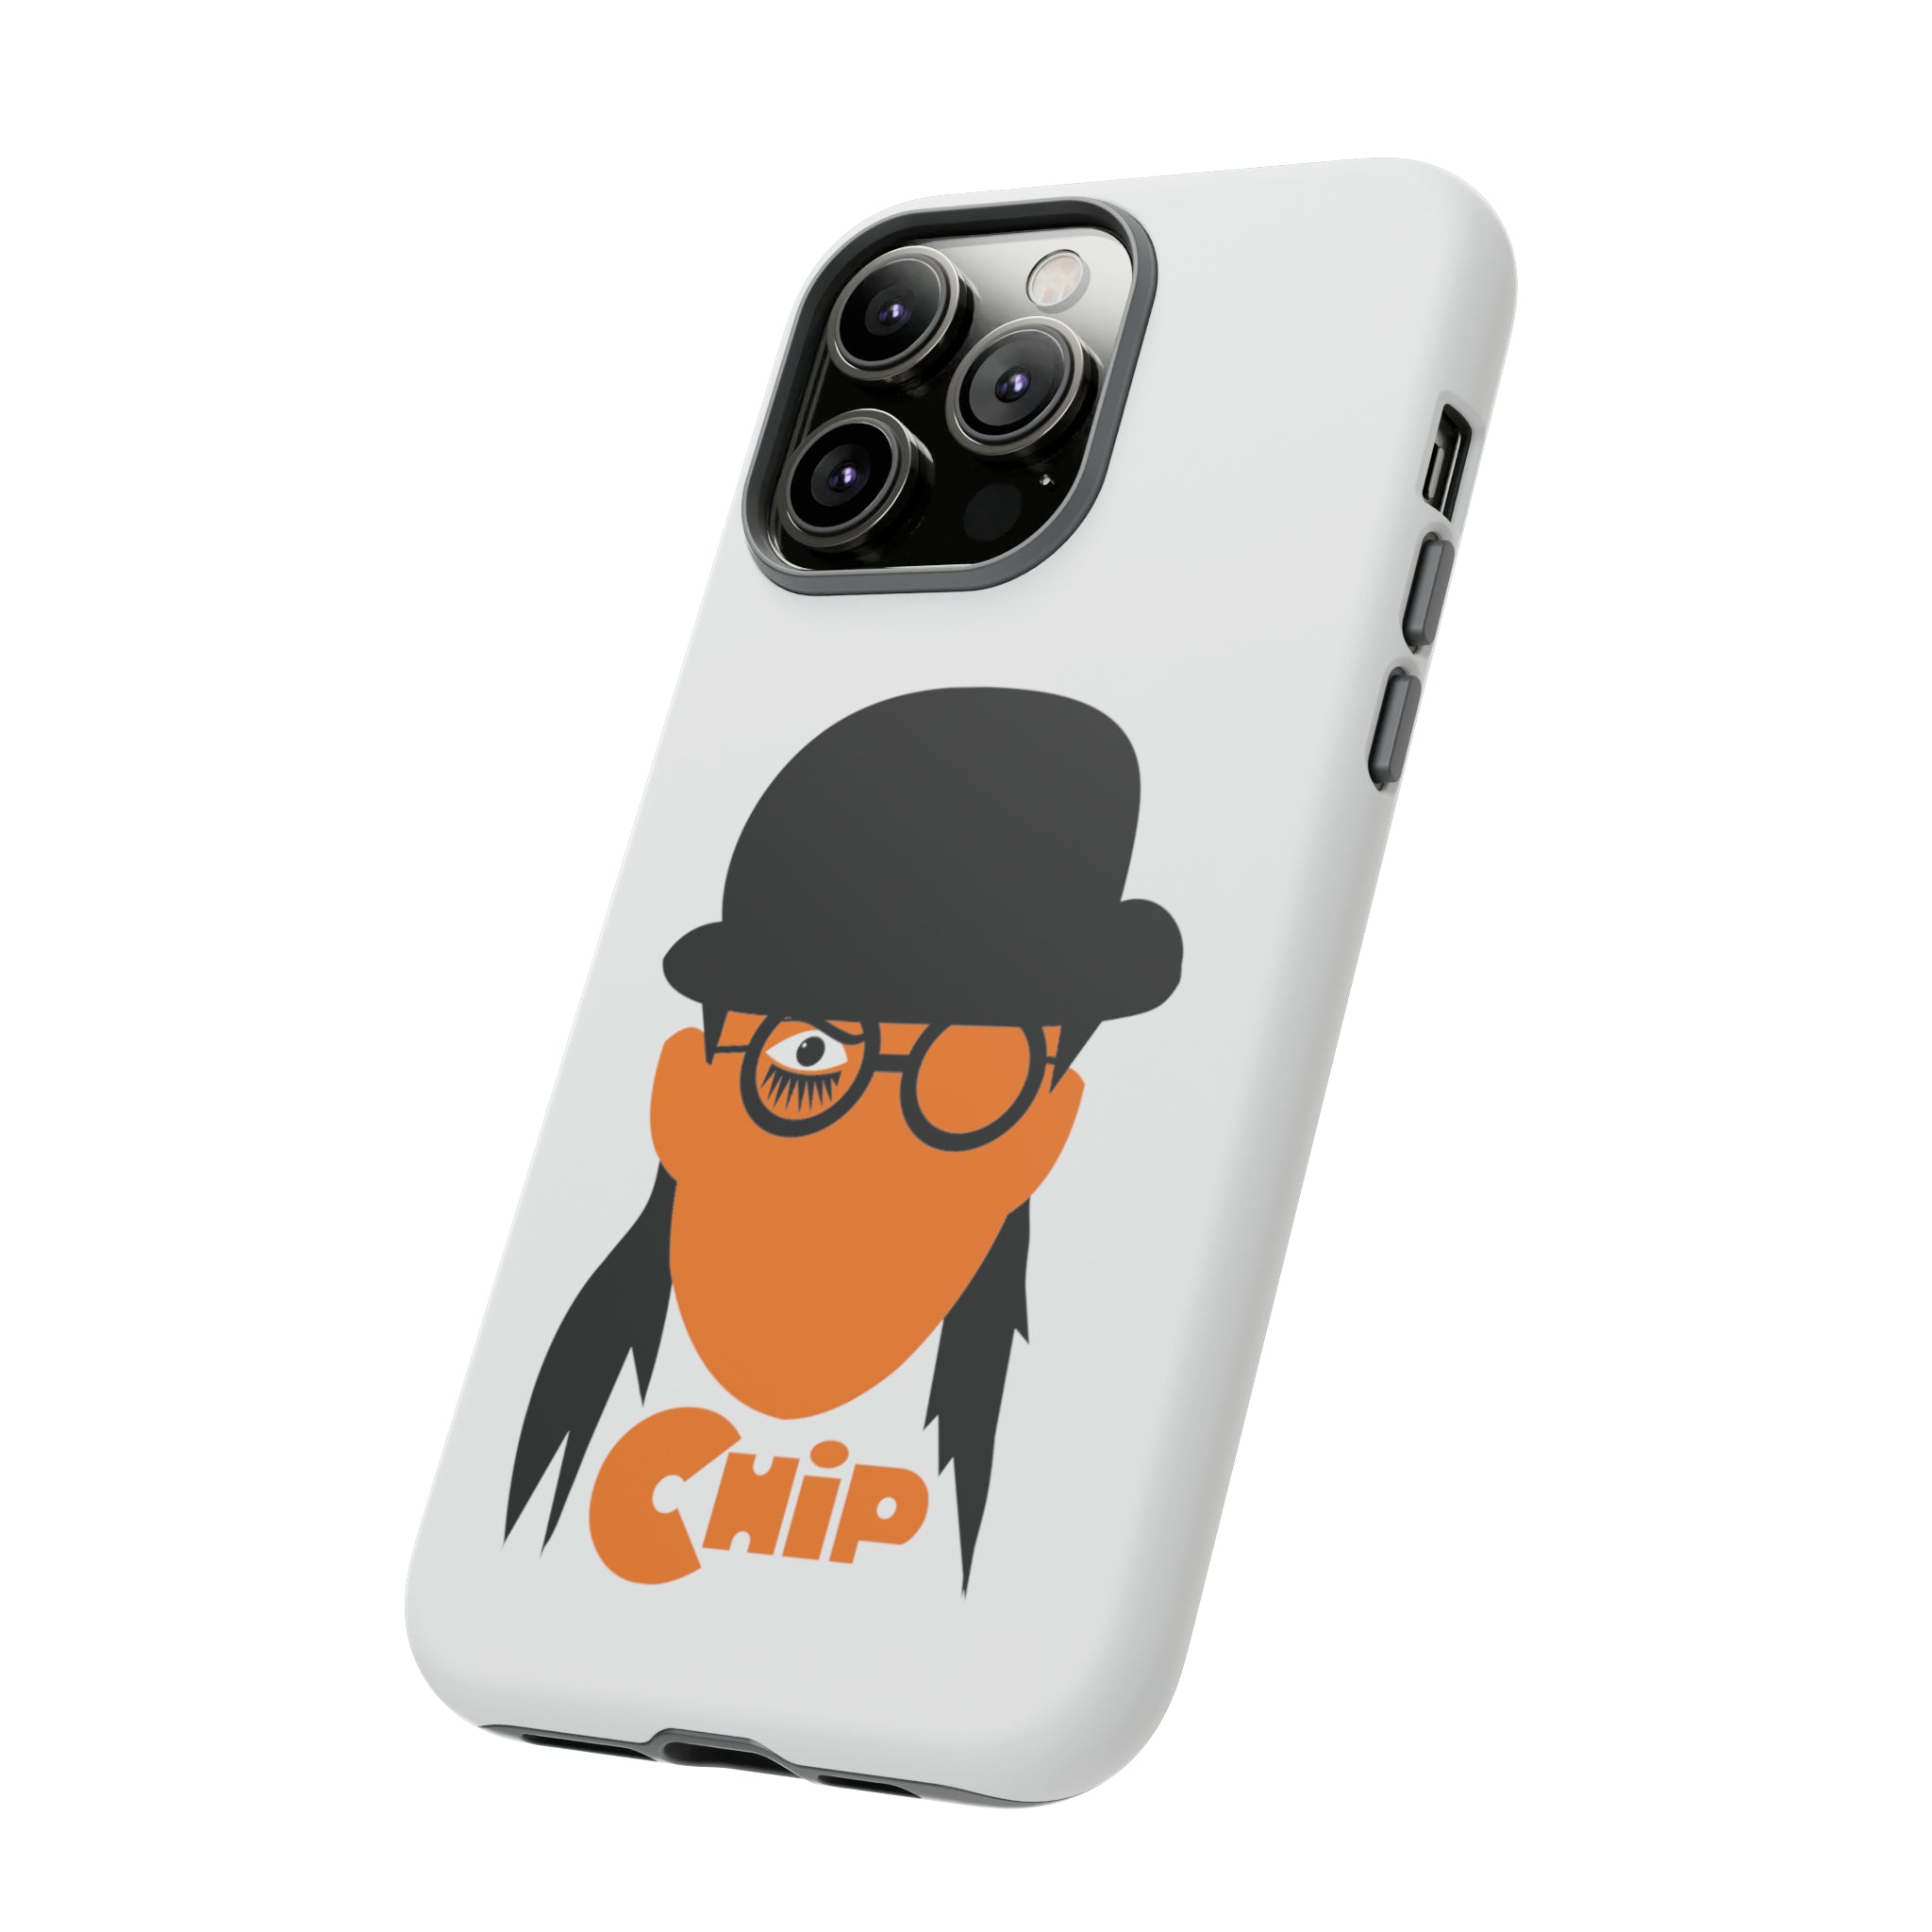 Chip Orange Tough Phone Cases